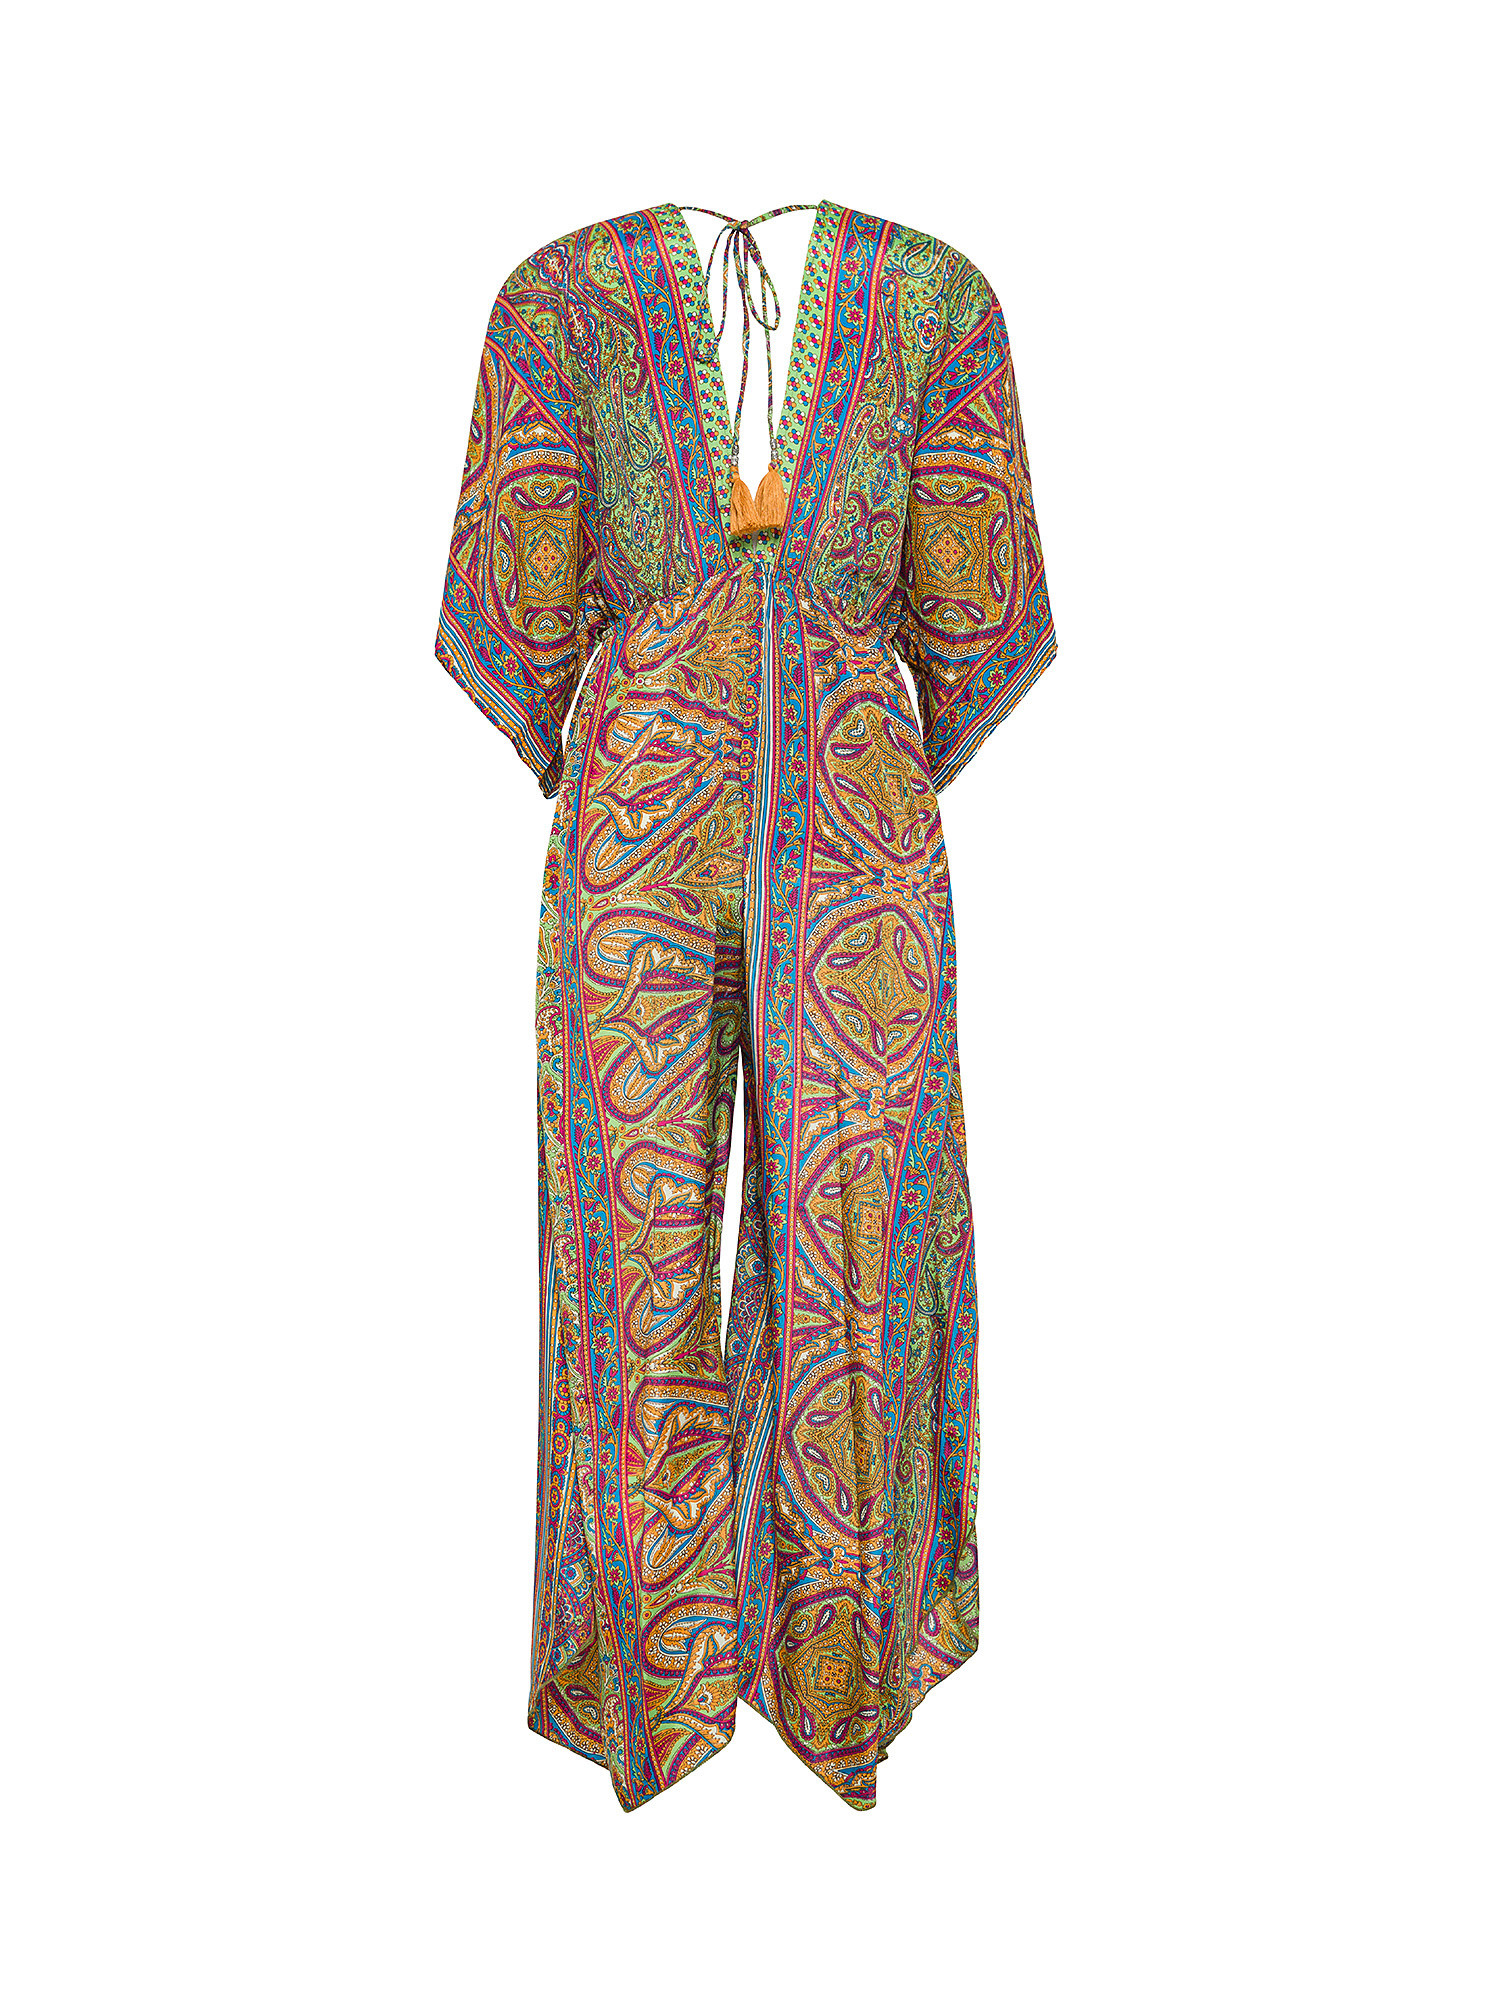 Koan - Patterned suit, Light Blue, large image number 1